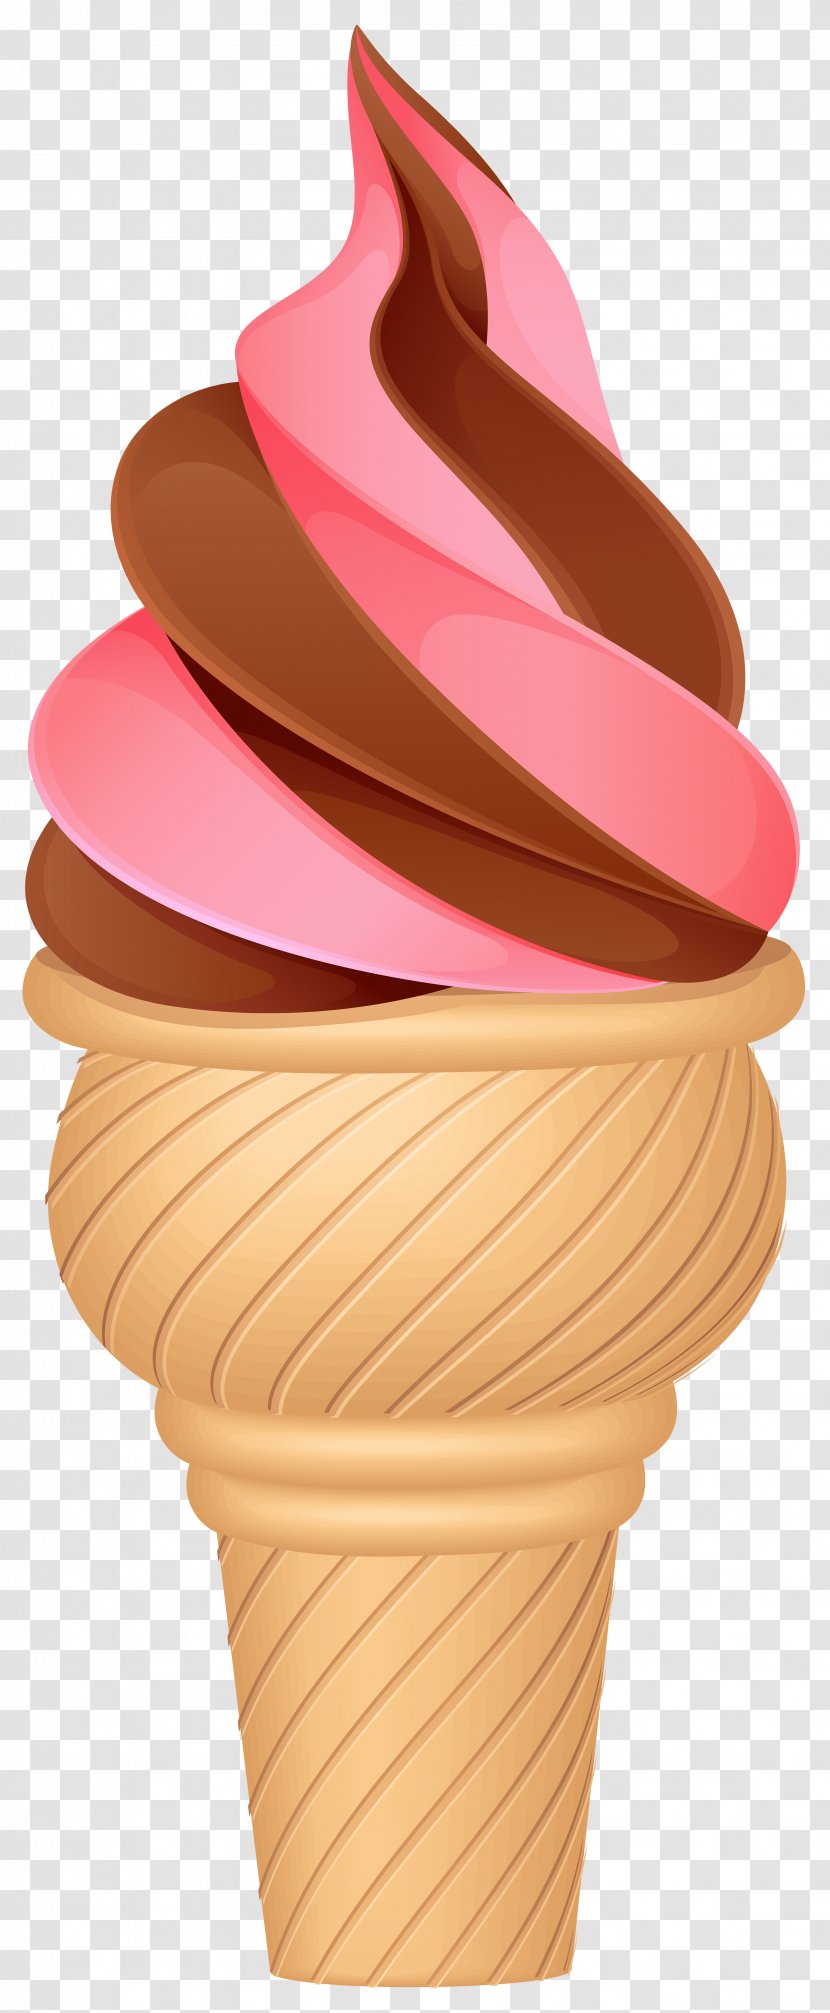 Ice Cream Cones Chocolate Neapolitan - Food Transparent PNG